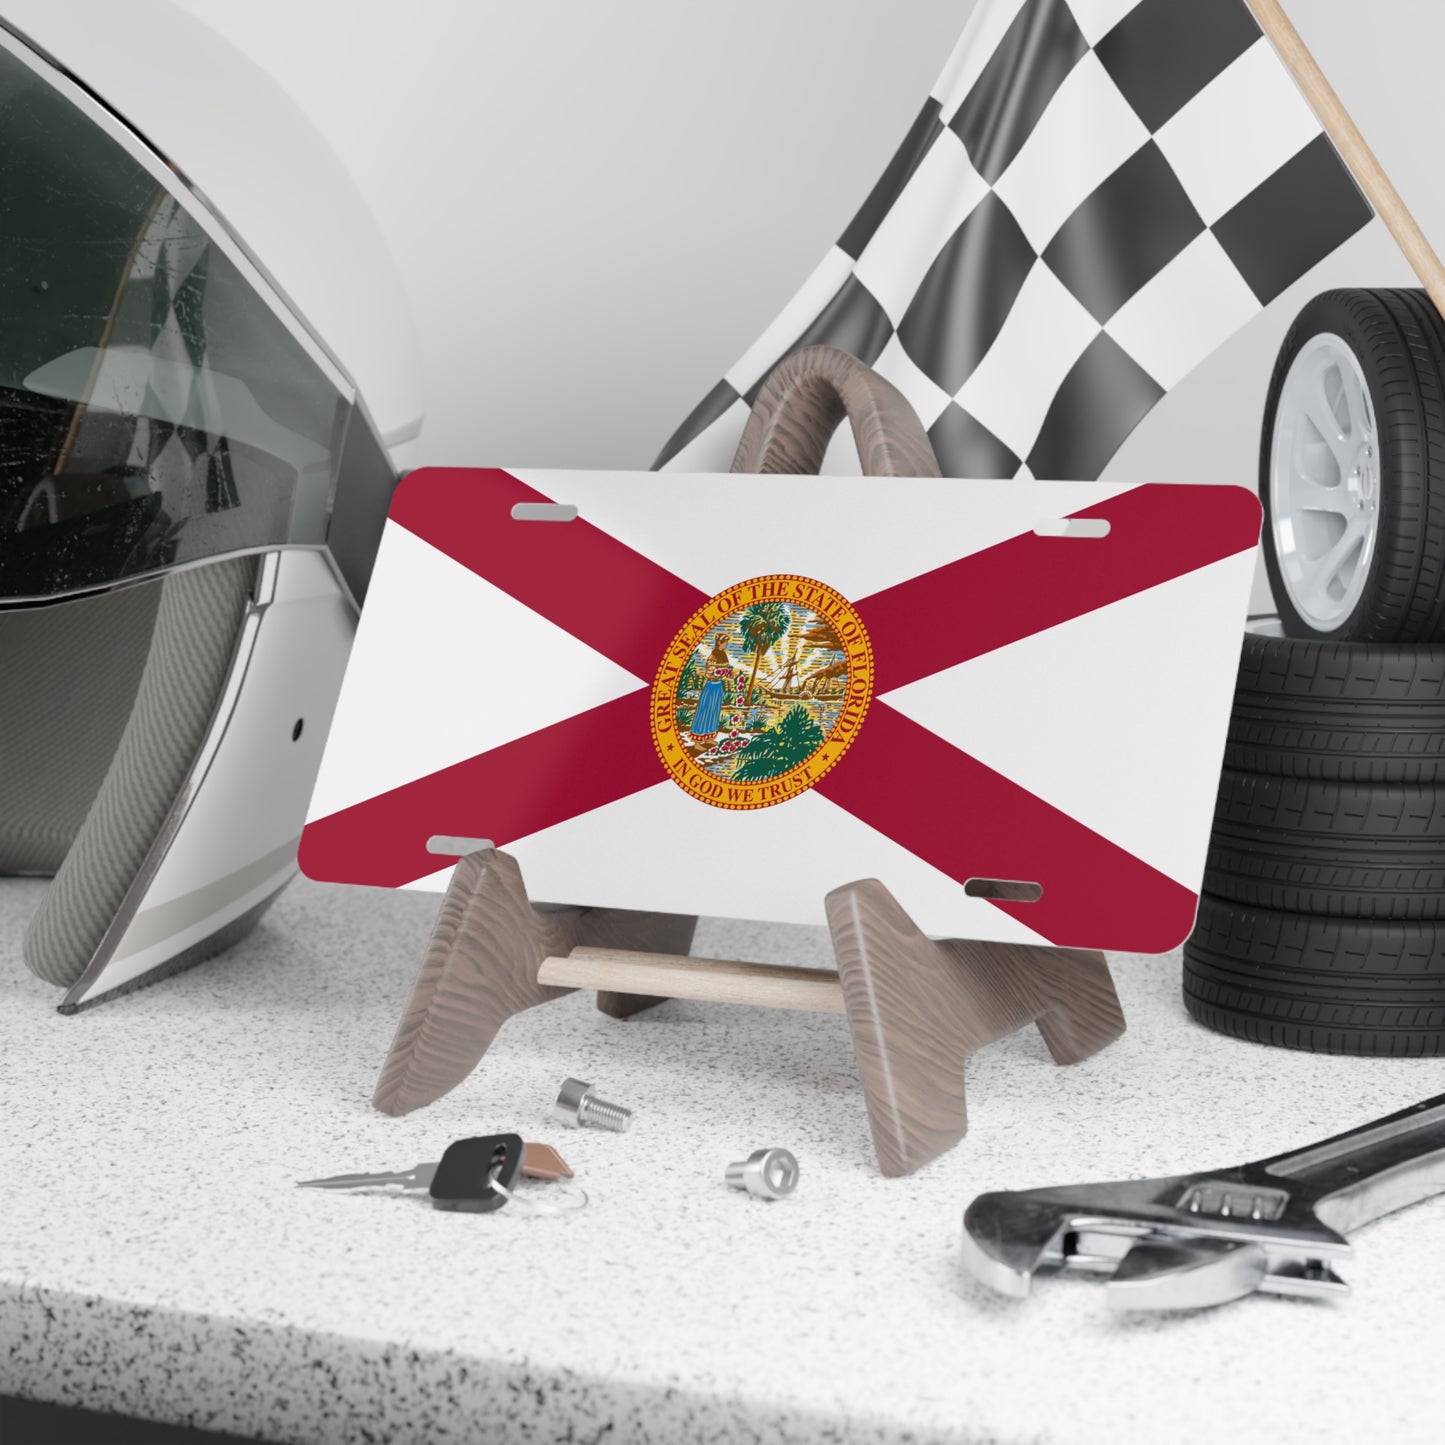 Florida State Flag, USA Vanity Plate